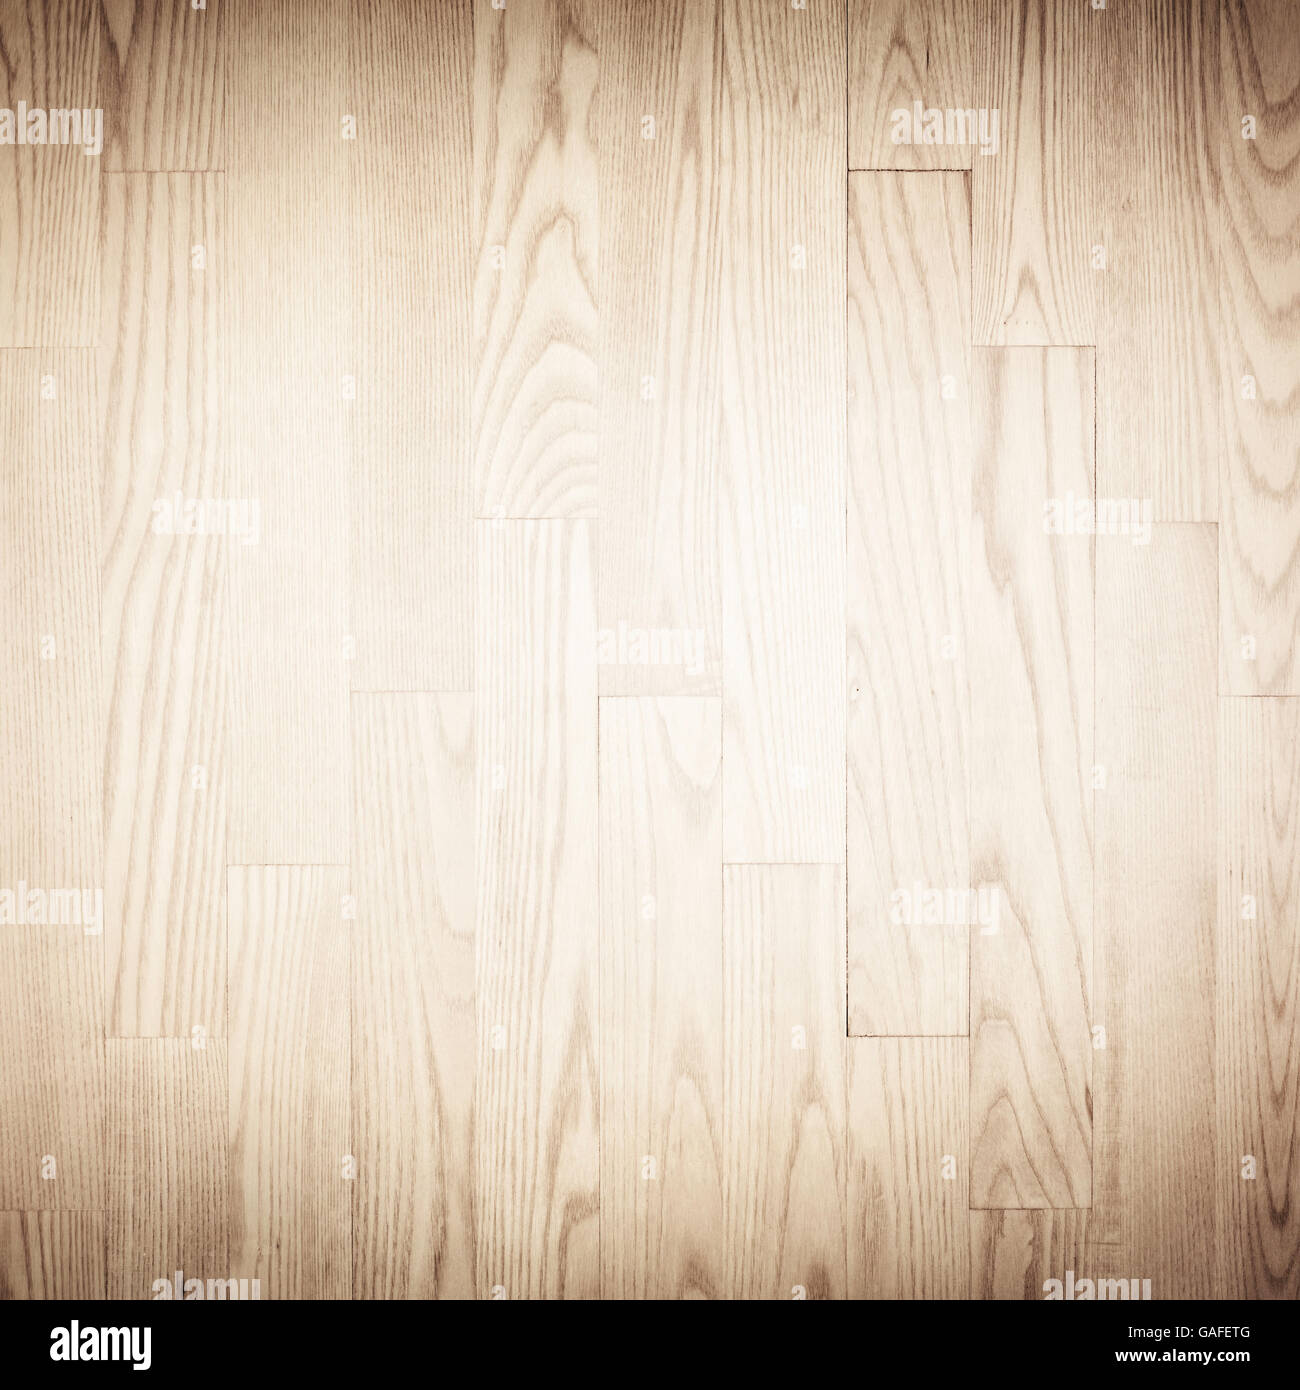 Pavimento di parquet marrone, texture di legno con vignette Foto Stock